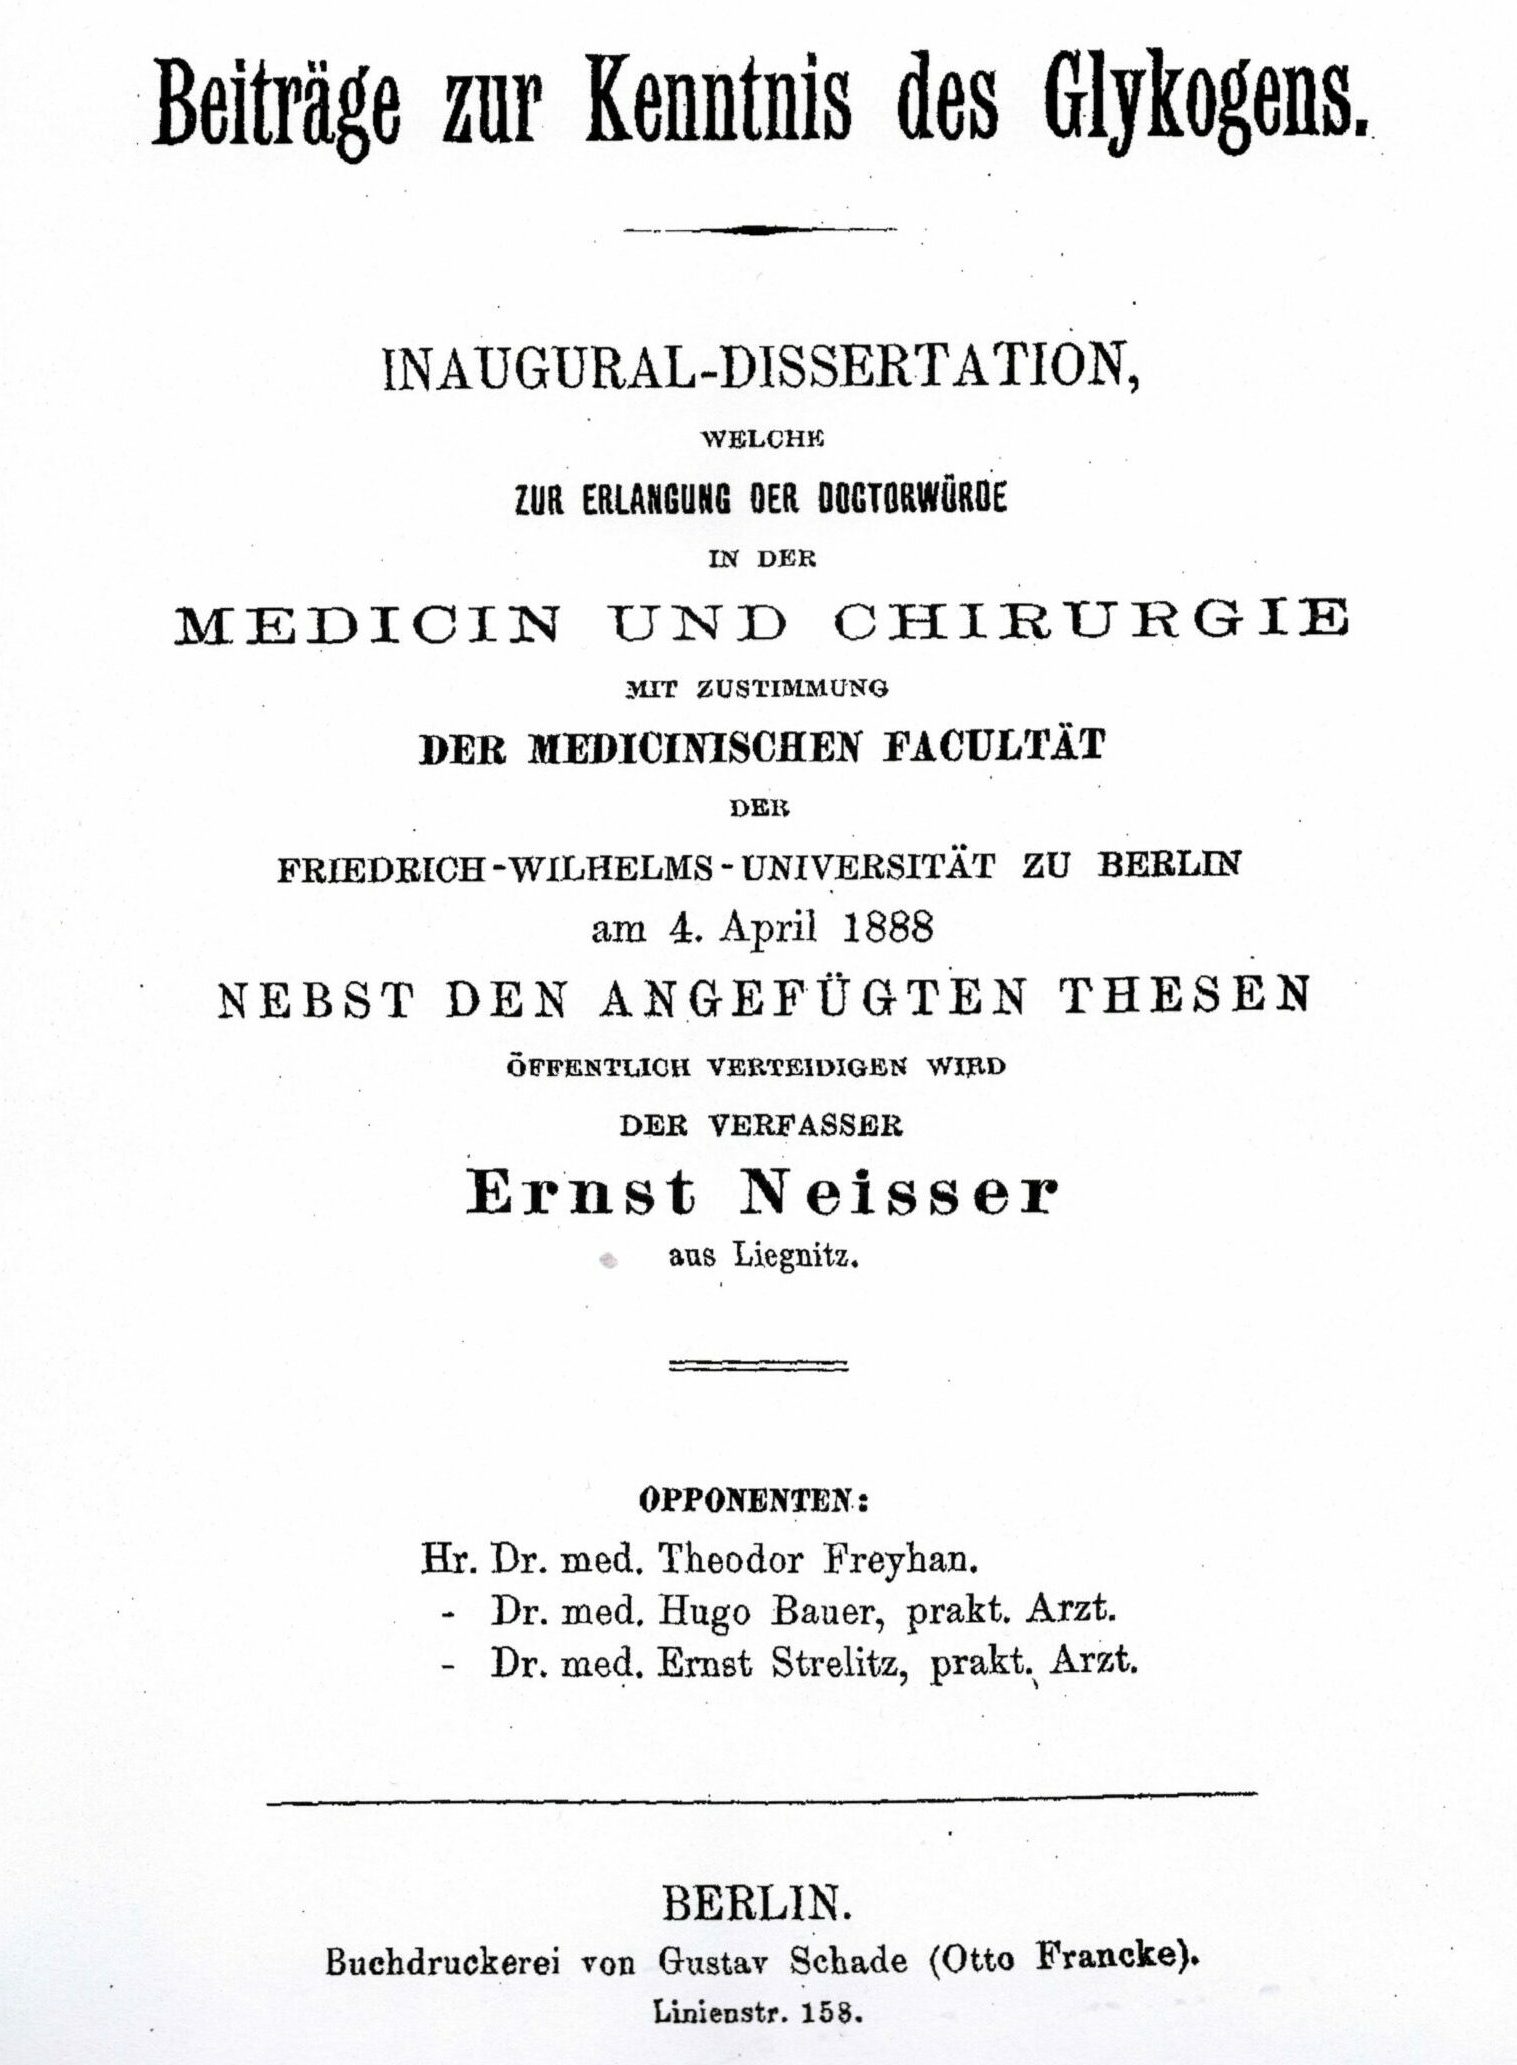 Dissertation, Berlin 1888